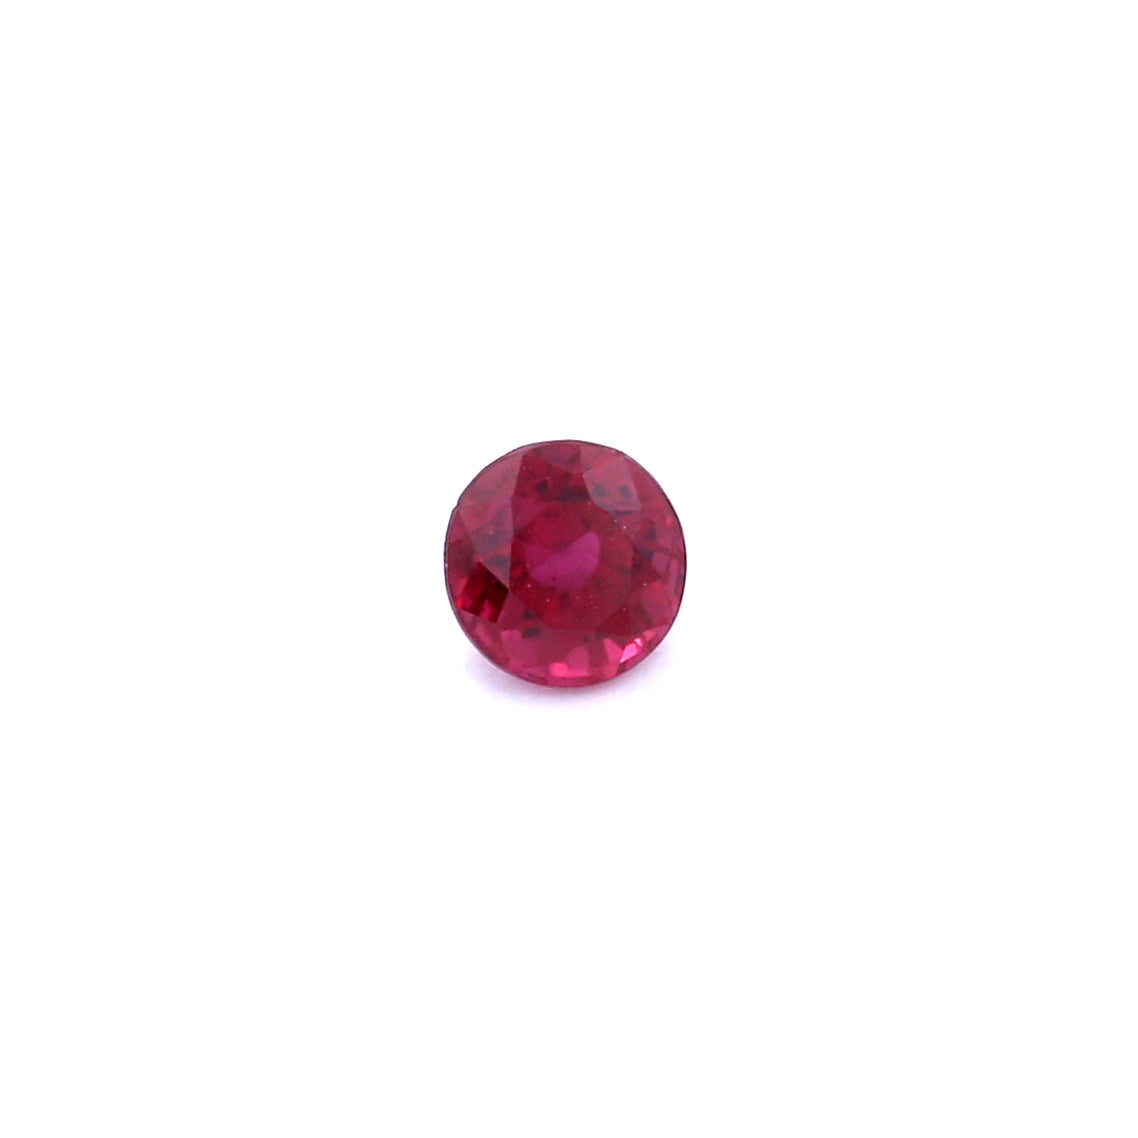 0.46ct Purplish Red, Round Ruby, Heated, Thailand - 4.29 - 4.40 x 3.03mm